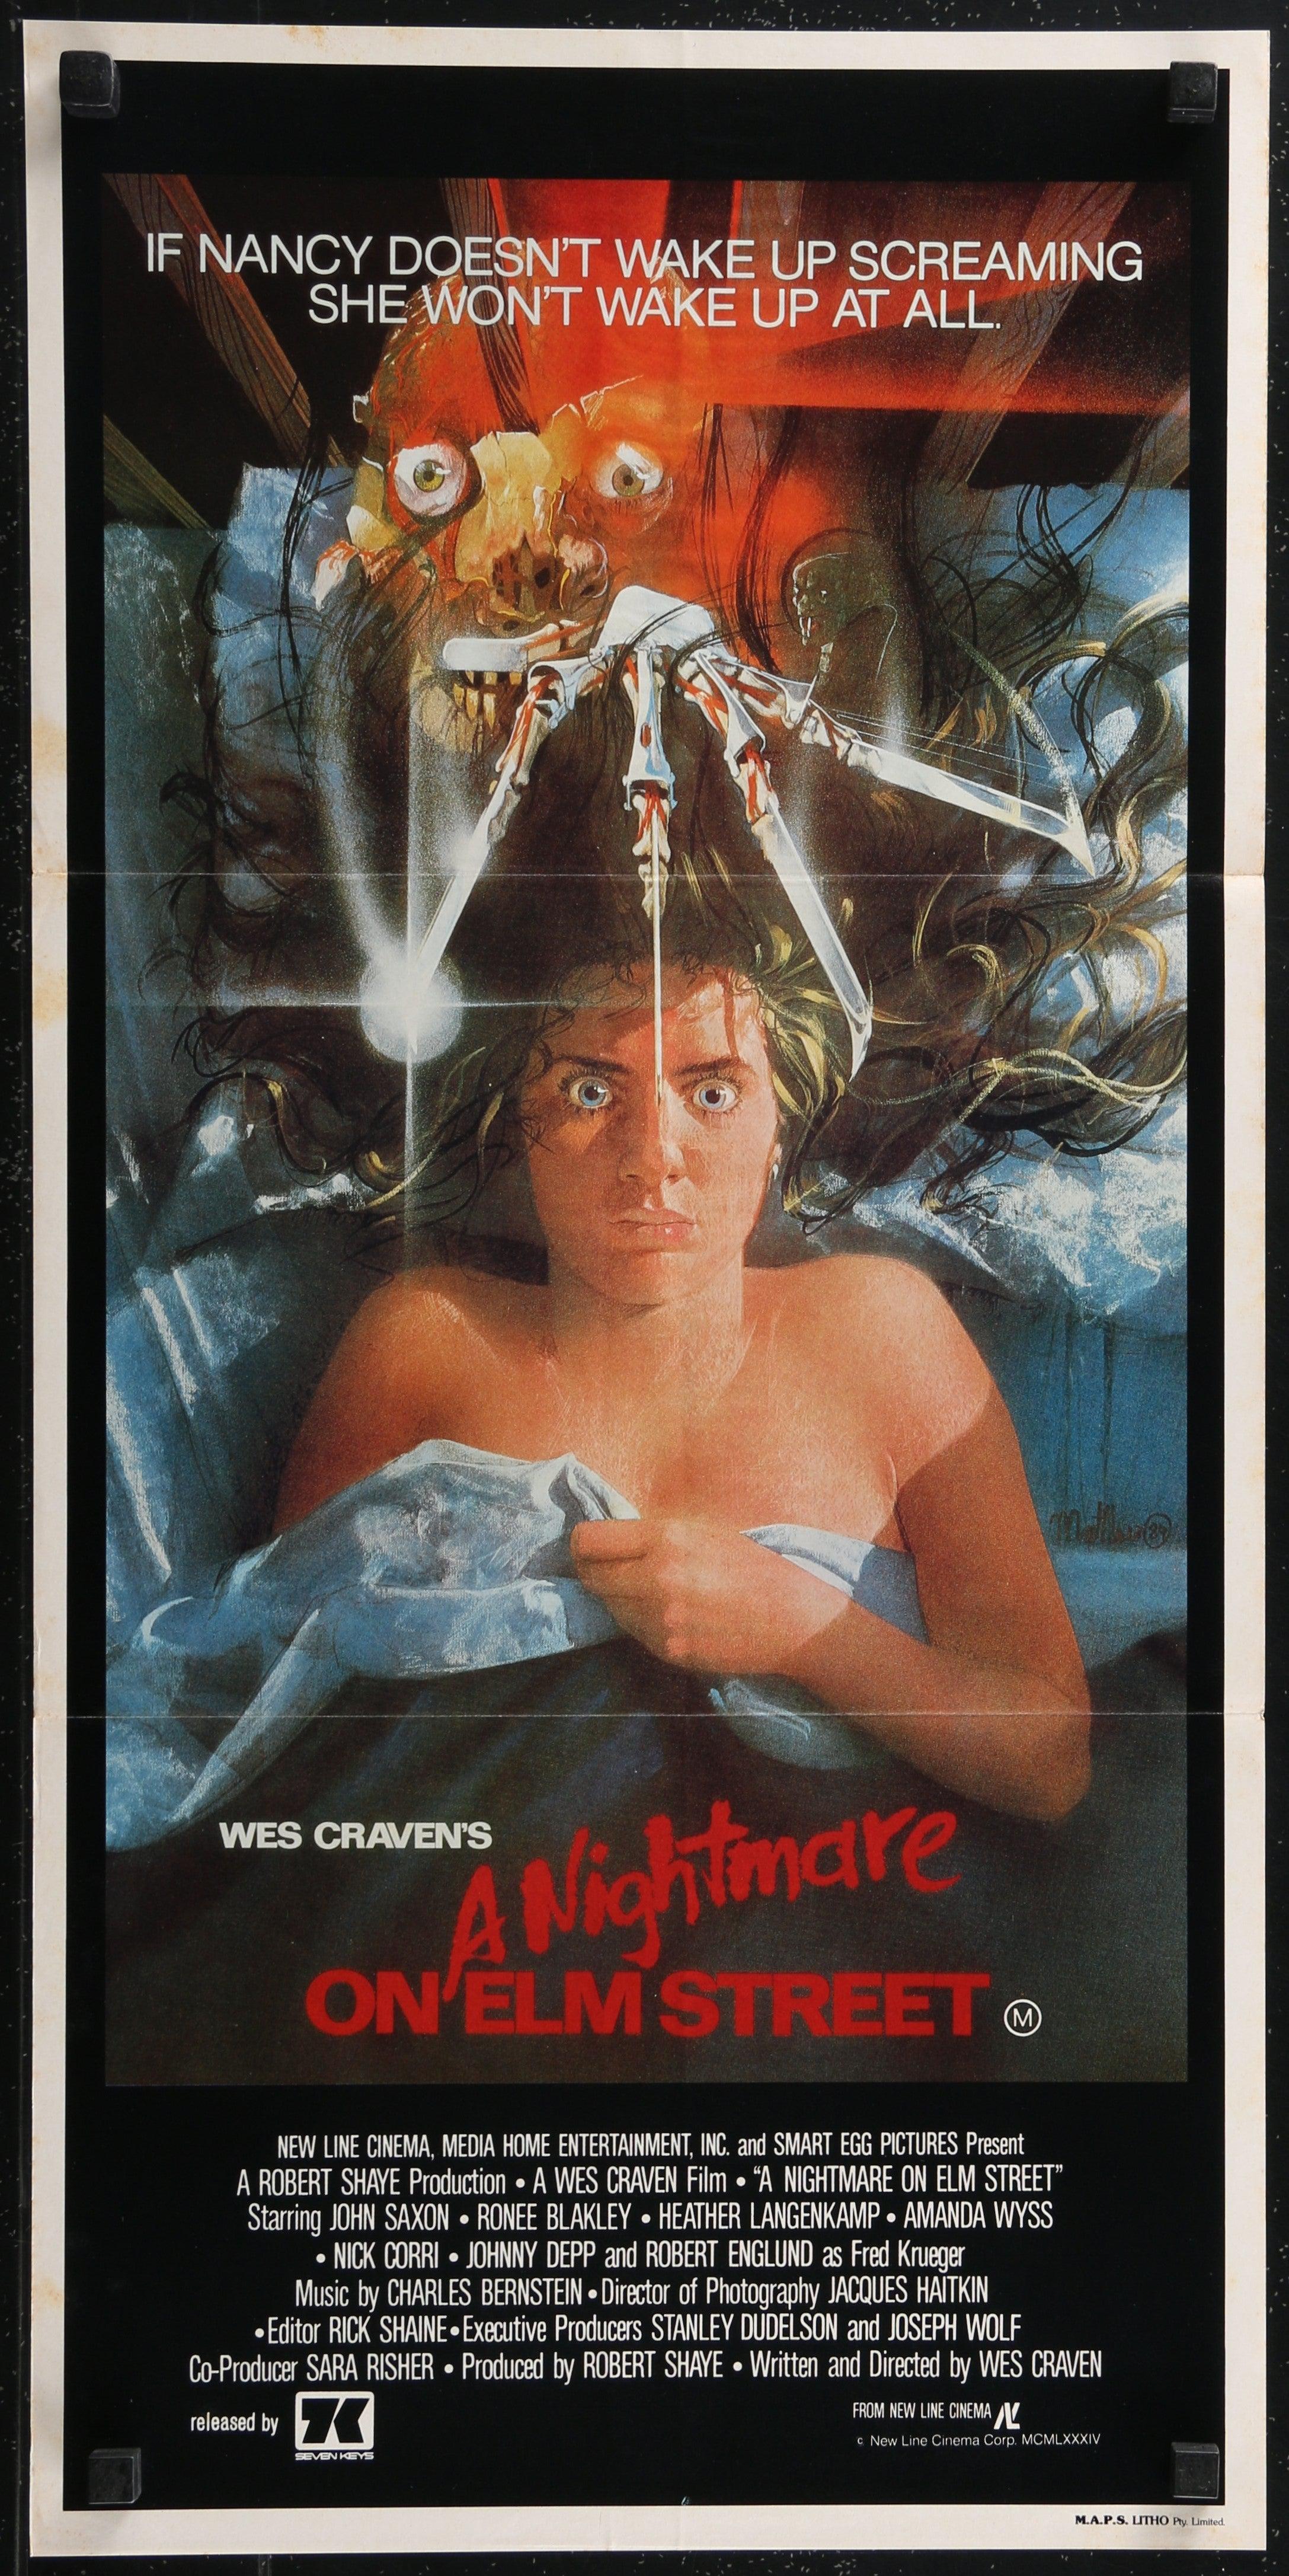 A Nightmare on Elm Street (1984) - Movie